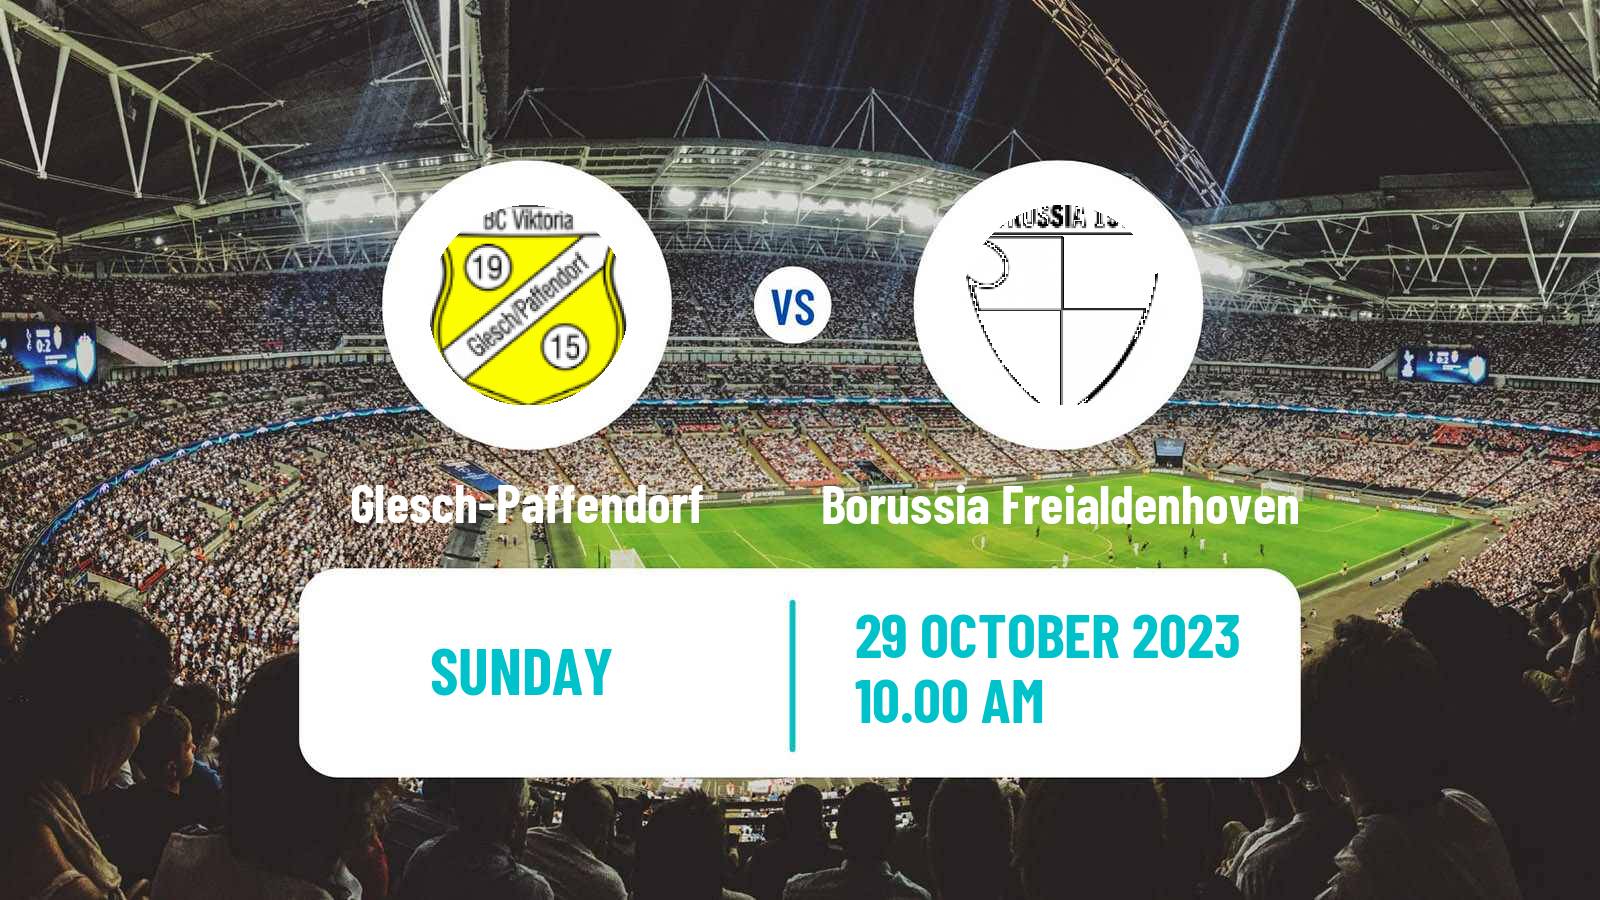 Soccer German Oberliga Mittelrhein Glesch-Paffendorf - Borussia Freialdenhoven